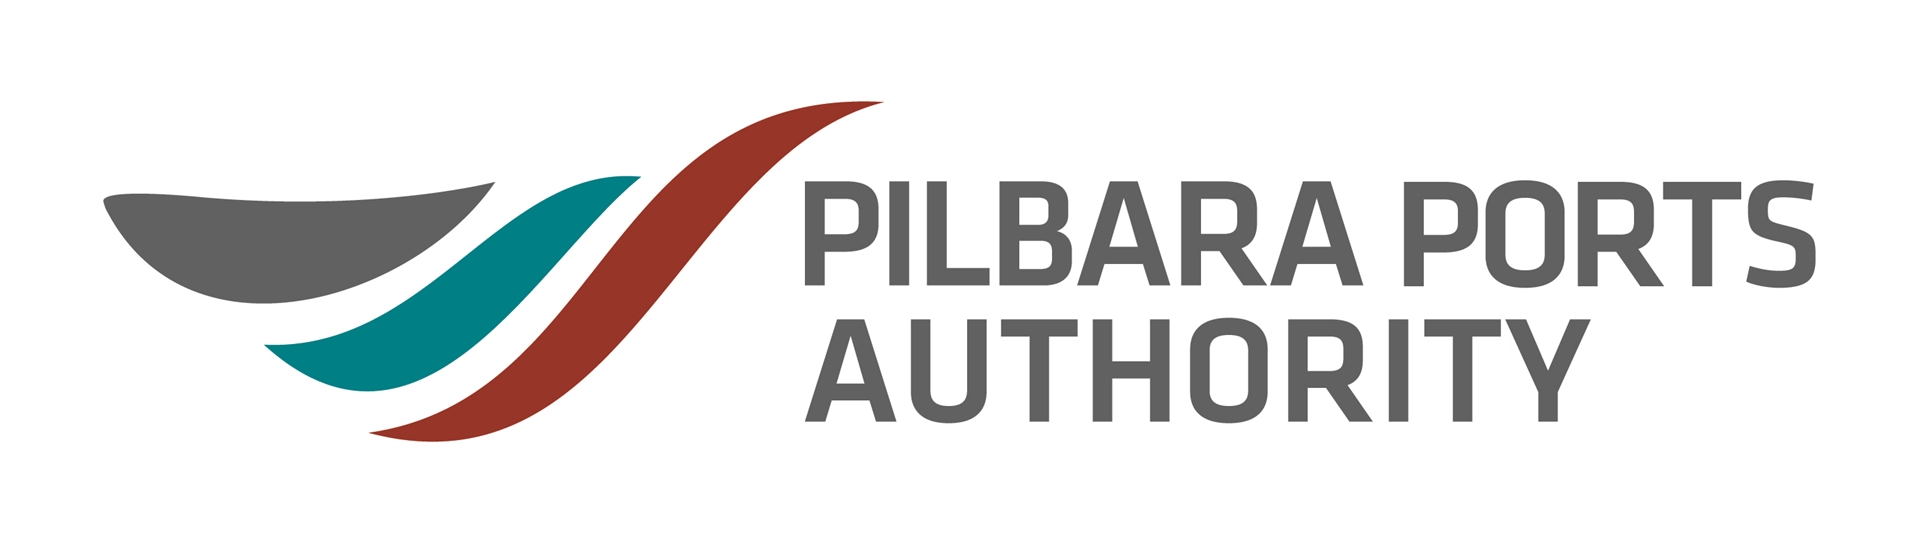 Pilbara Ports Authority Logo CMYK Image